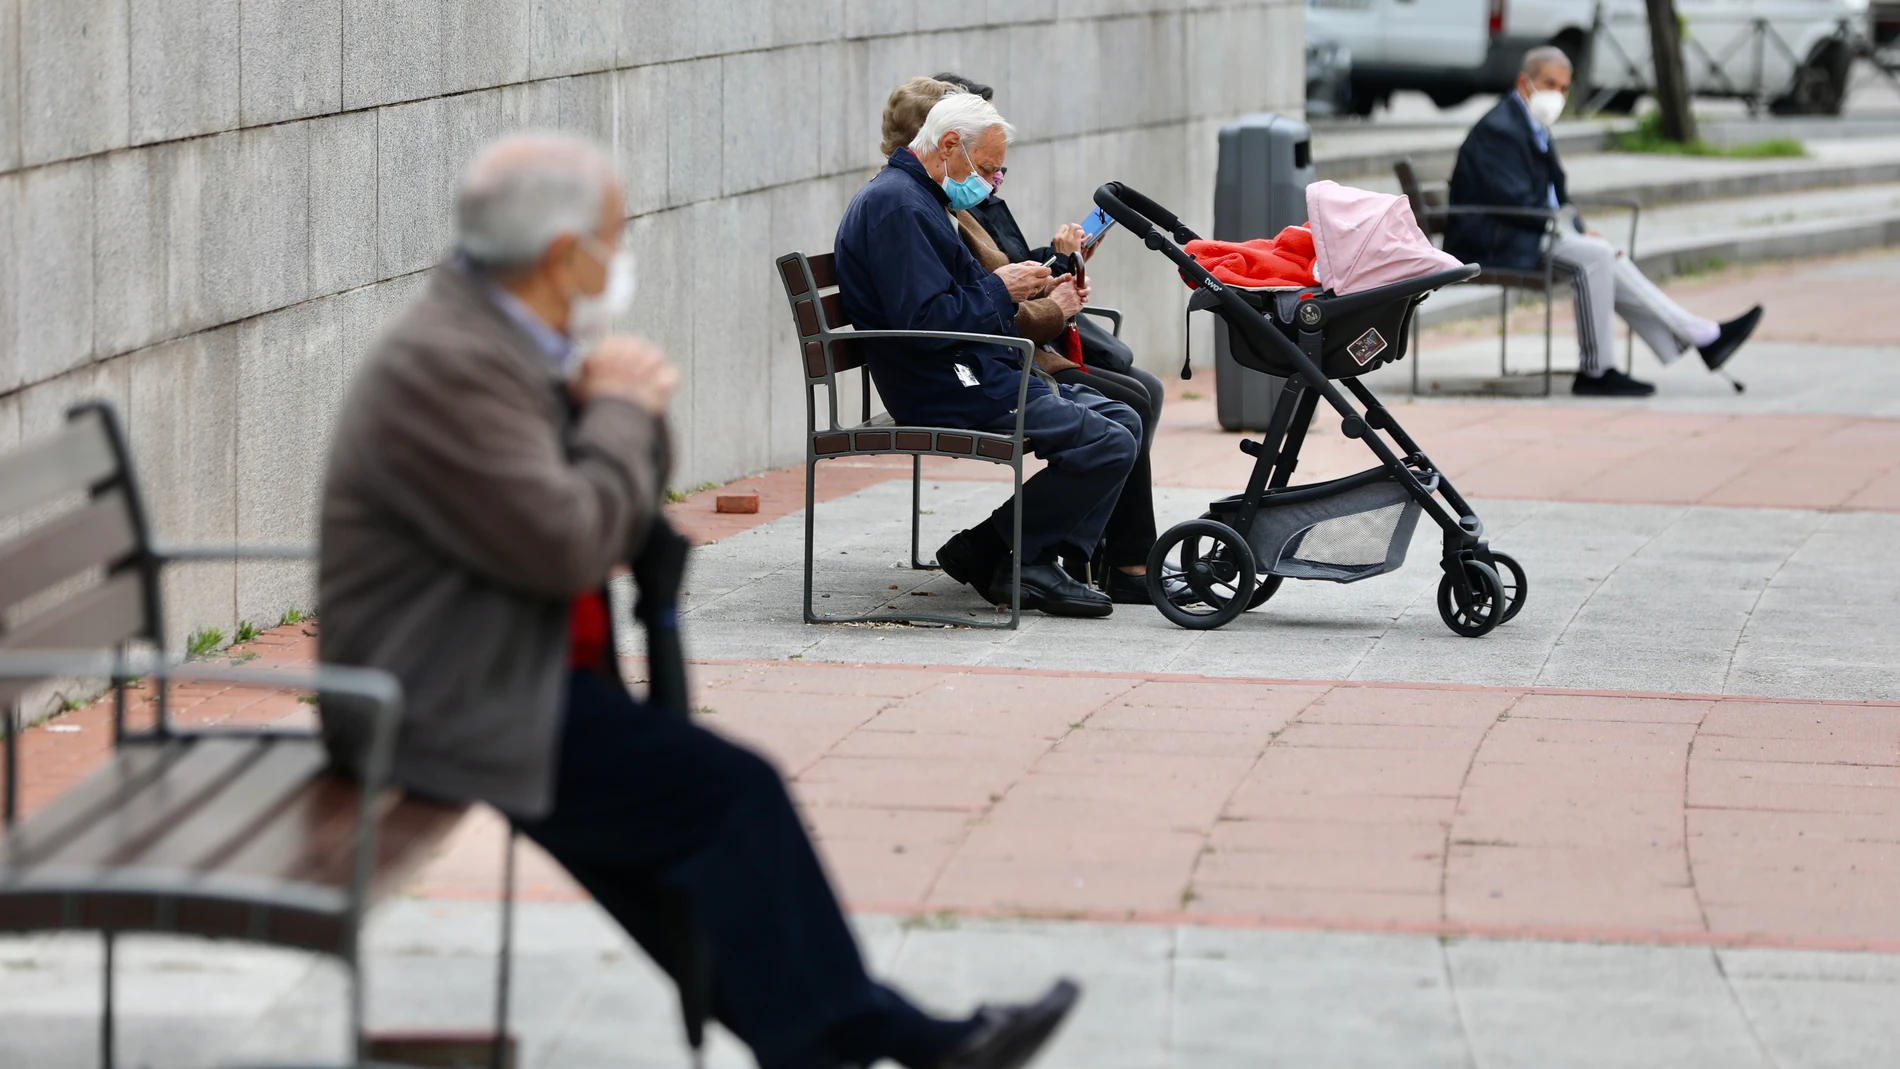 Varias personas mayores descansa sentadas en bancos en la calle